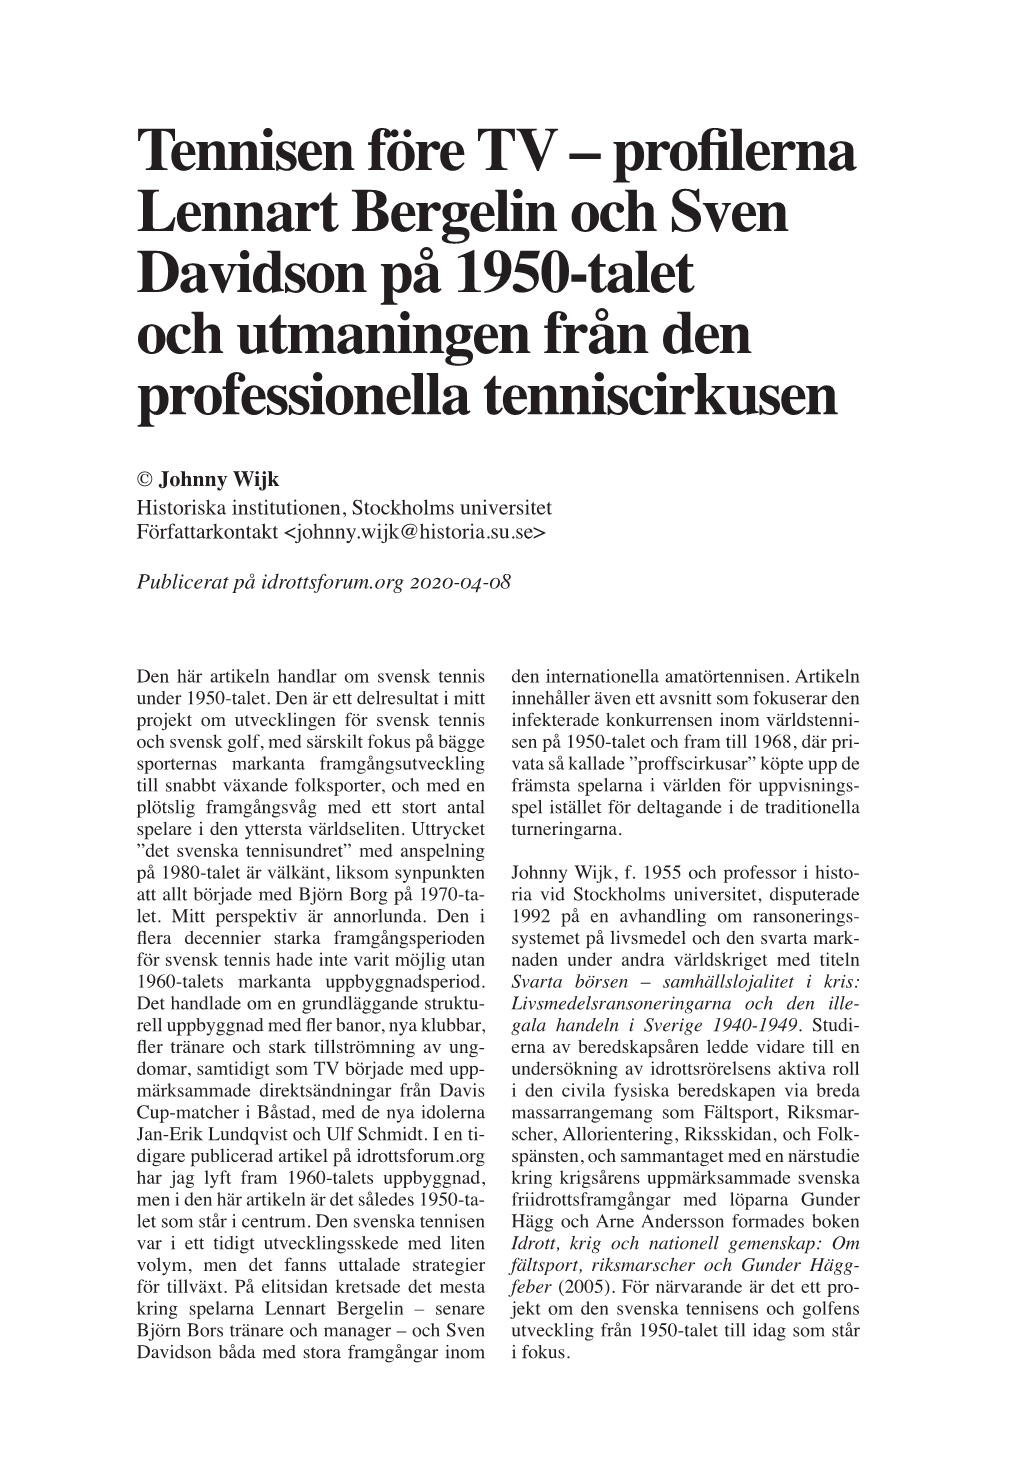 Profilerna Lennart Bergelin Och Sven Davidson På 1950-Talet Och Utmaningen Från Den Professionella Tenniscirkusen